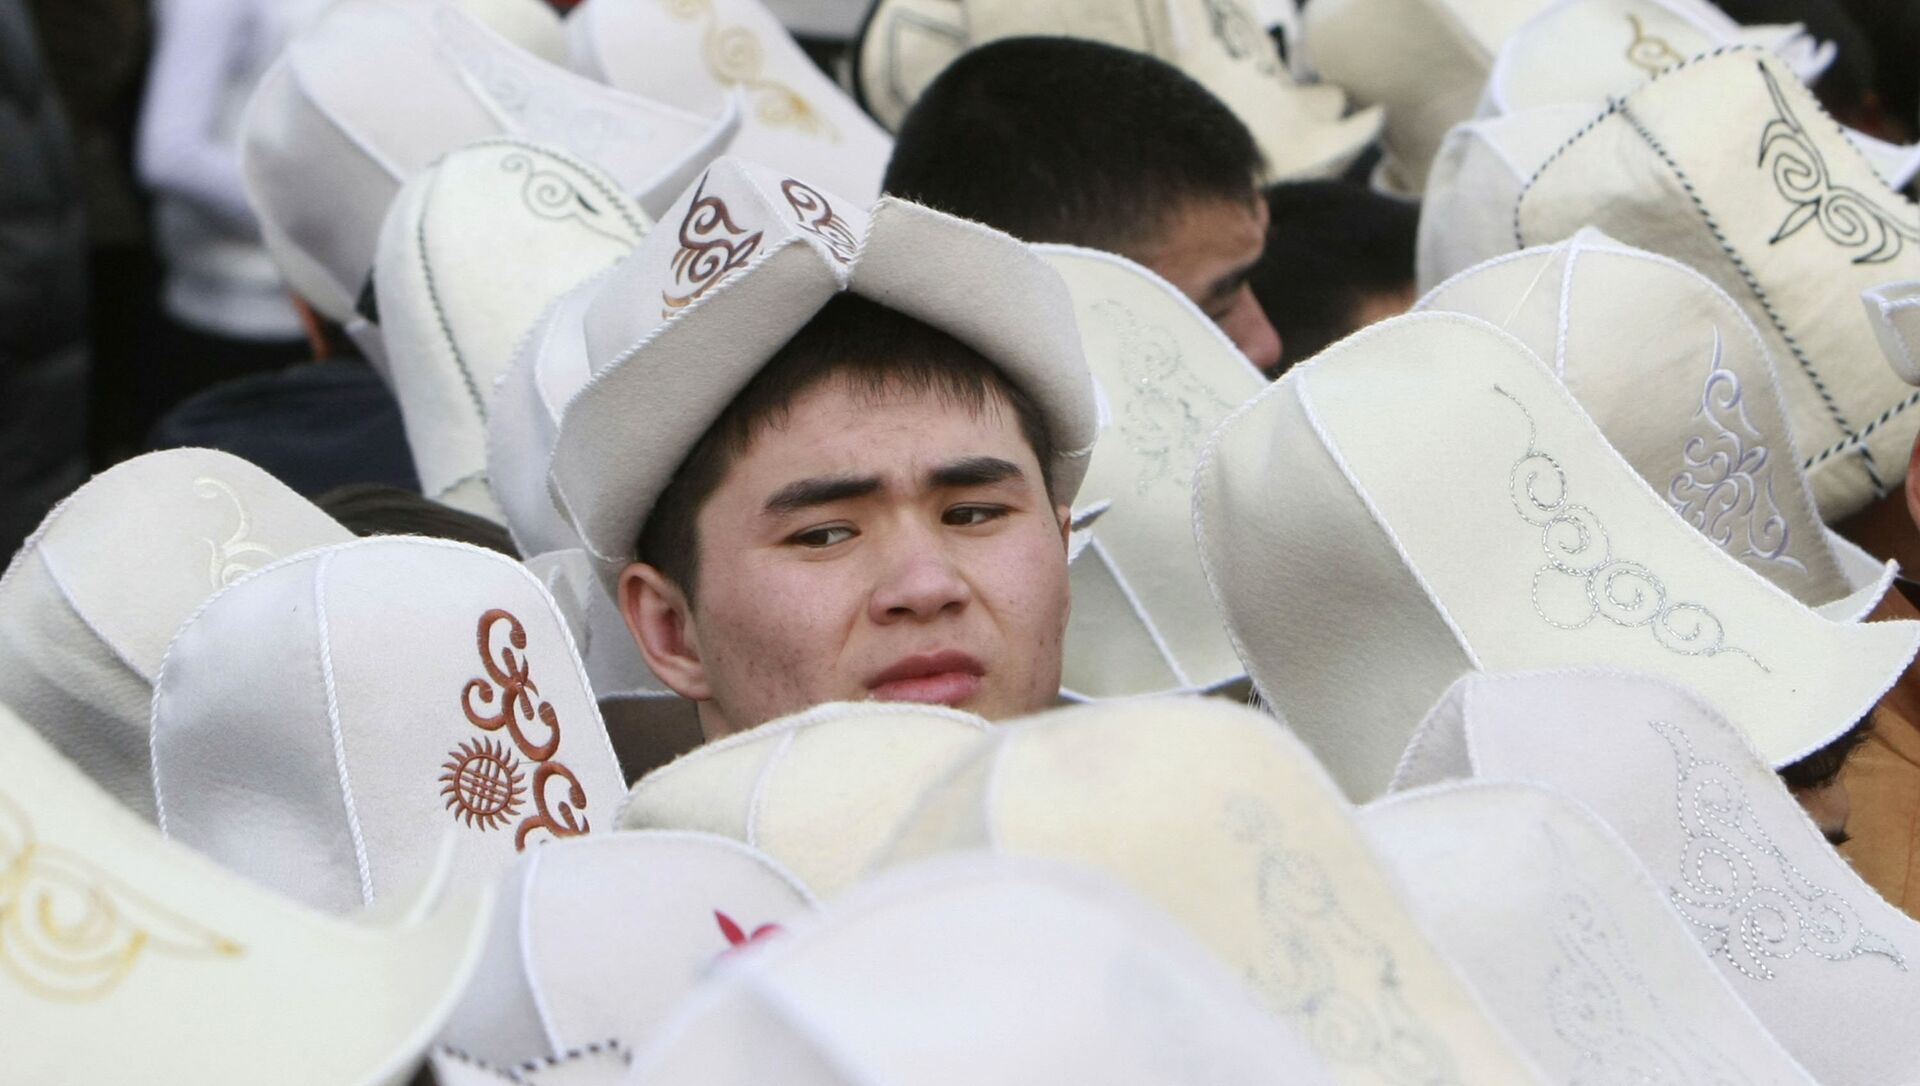 Сайт киргизов. АК калпак кыргызский. Головной убор киргизов. Киргизский колпак. Киргизский головной убор мужской.